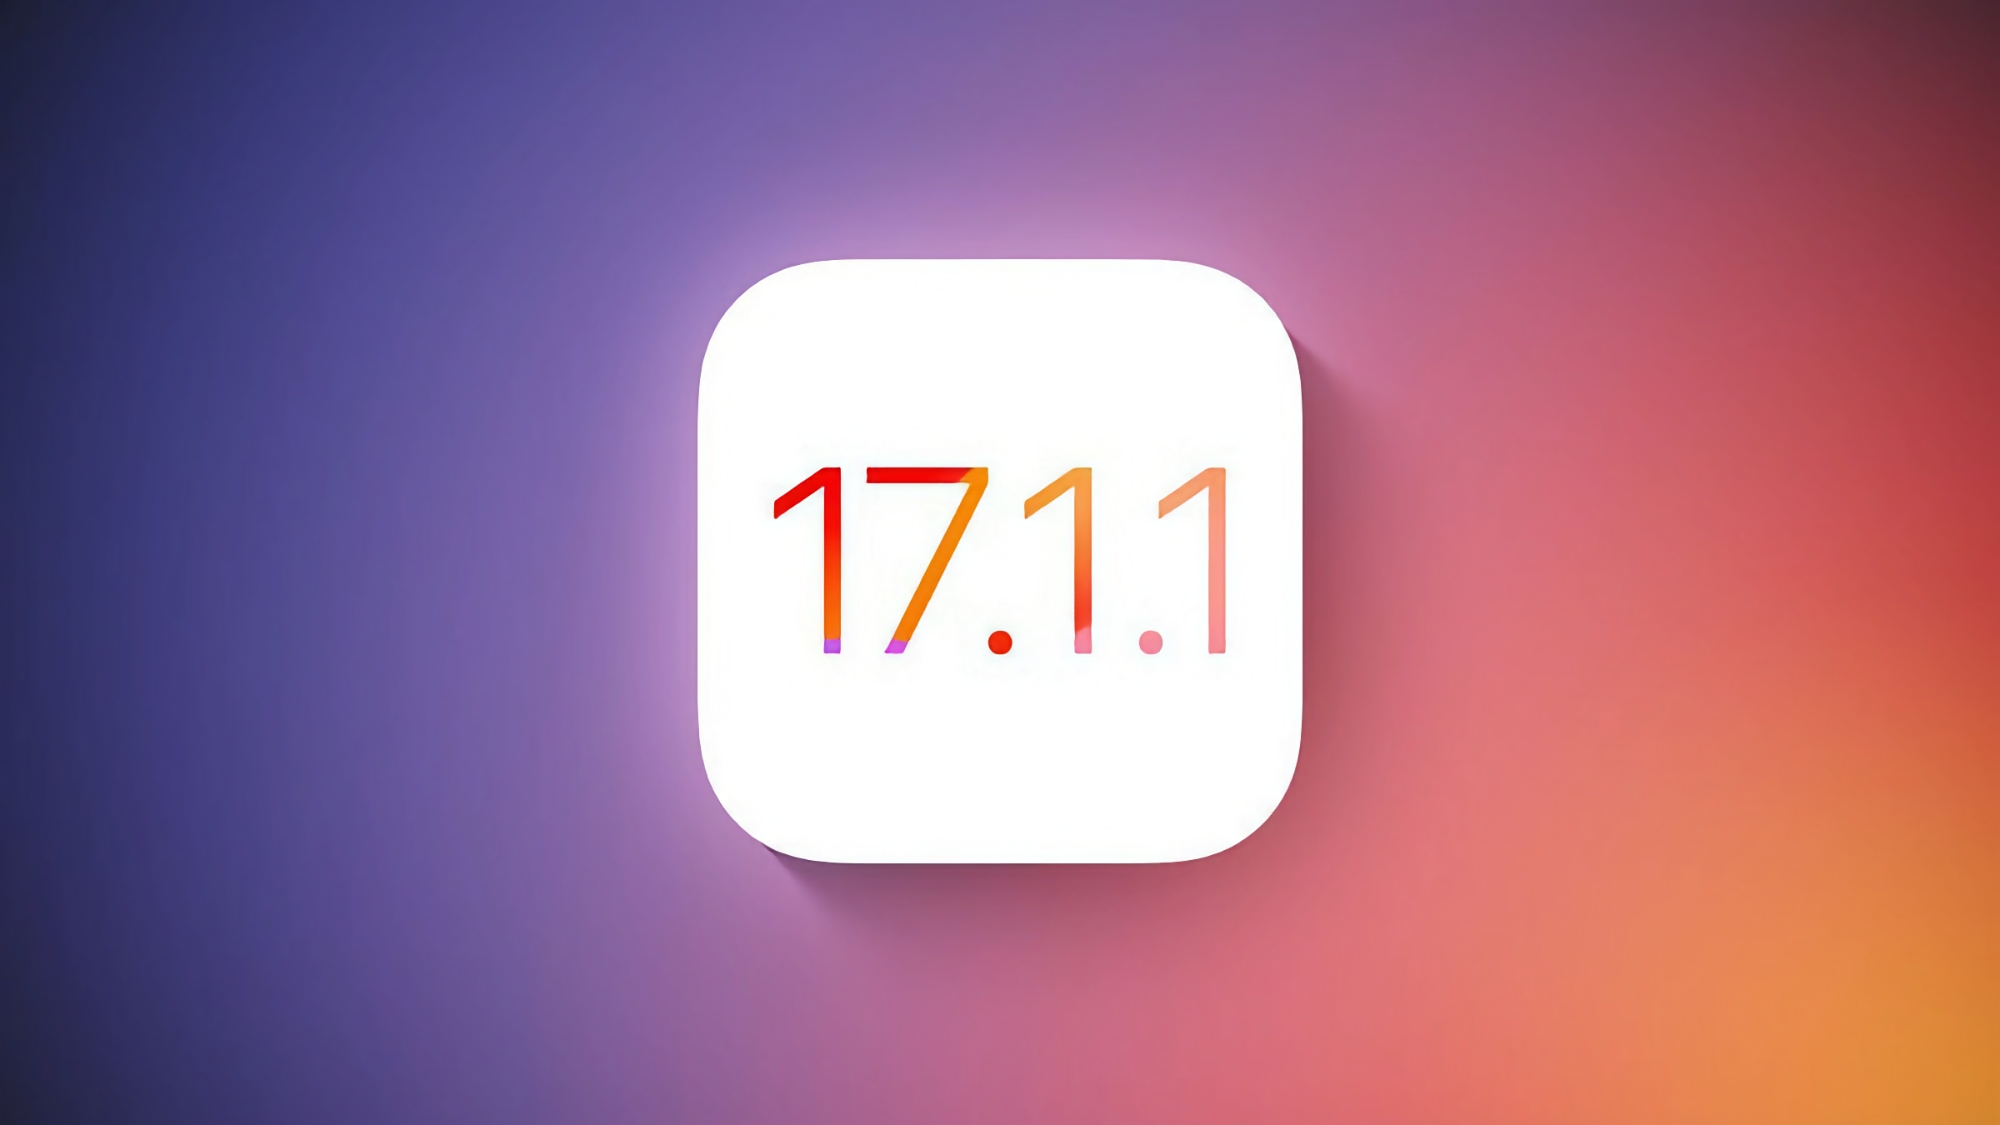 Apple släpper iOS 17.1.1.1 för iPhone den här veckan, med buggar fixade i systemet